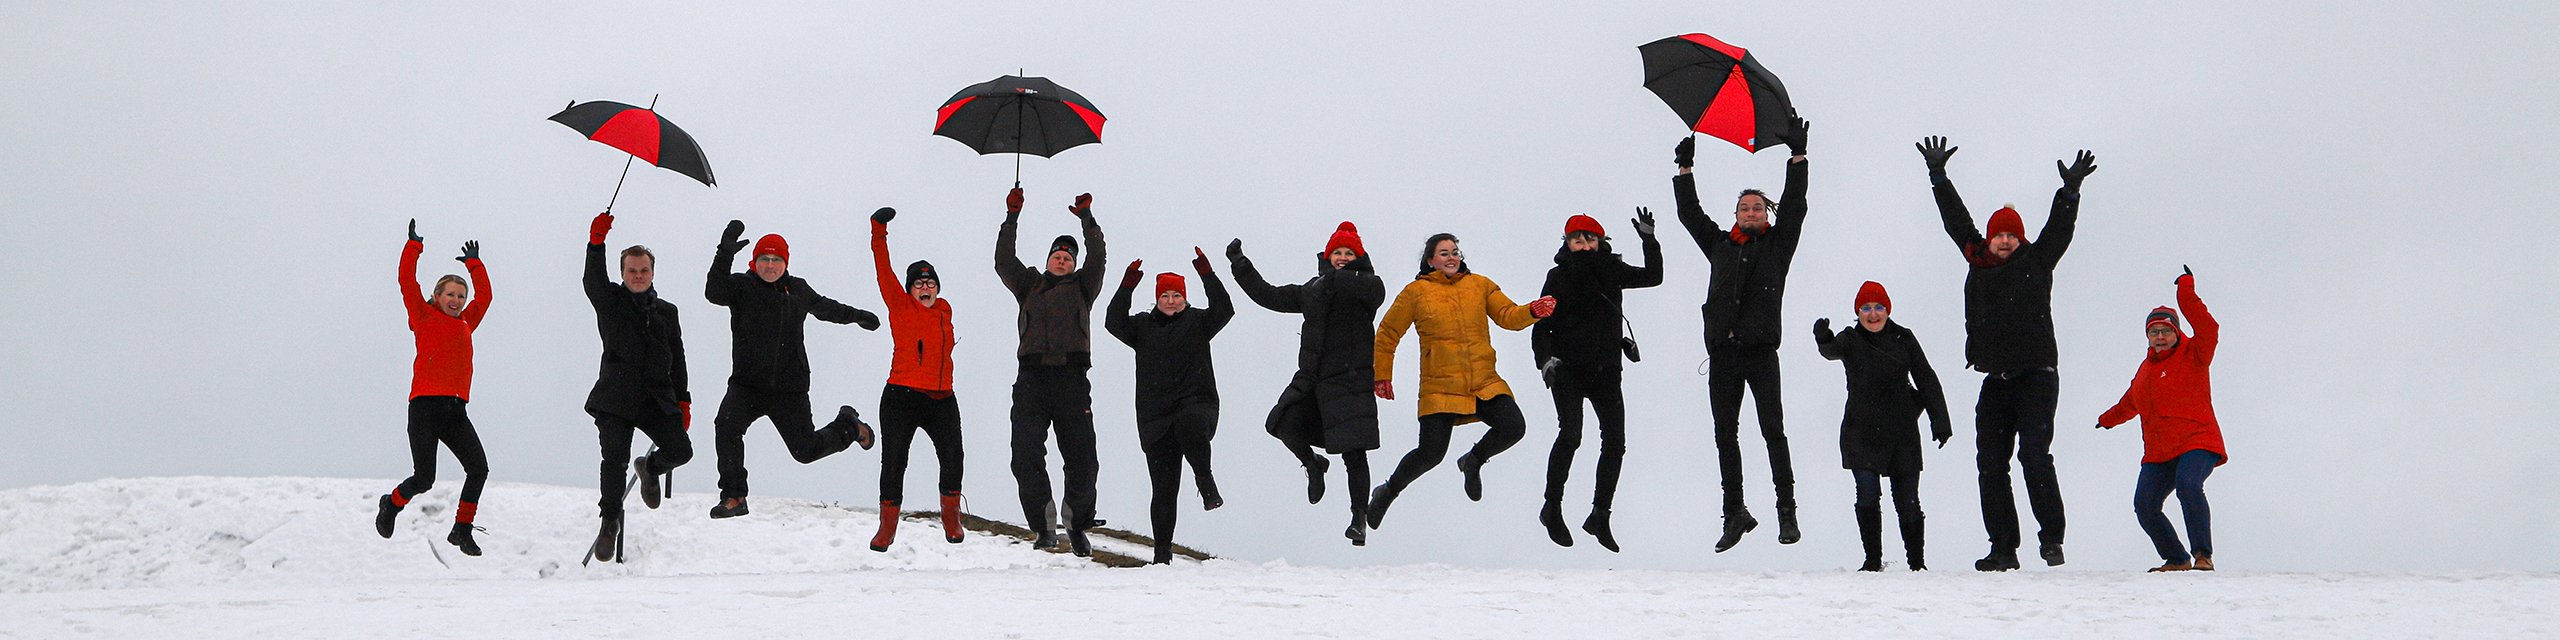 Etelä-Karjalan liiton henkilökuntaa hyppimässä rivissä Lappeenrannan Linnoituksen valleilla talvisessa maisemassa.